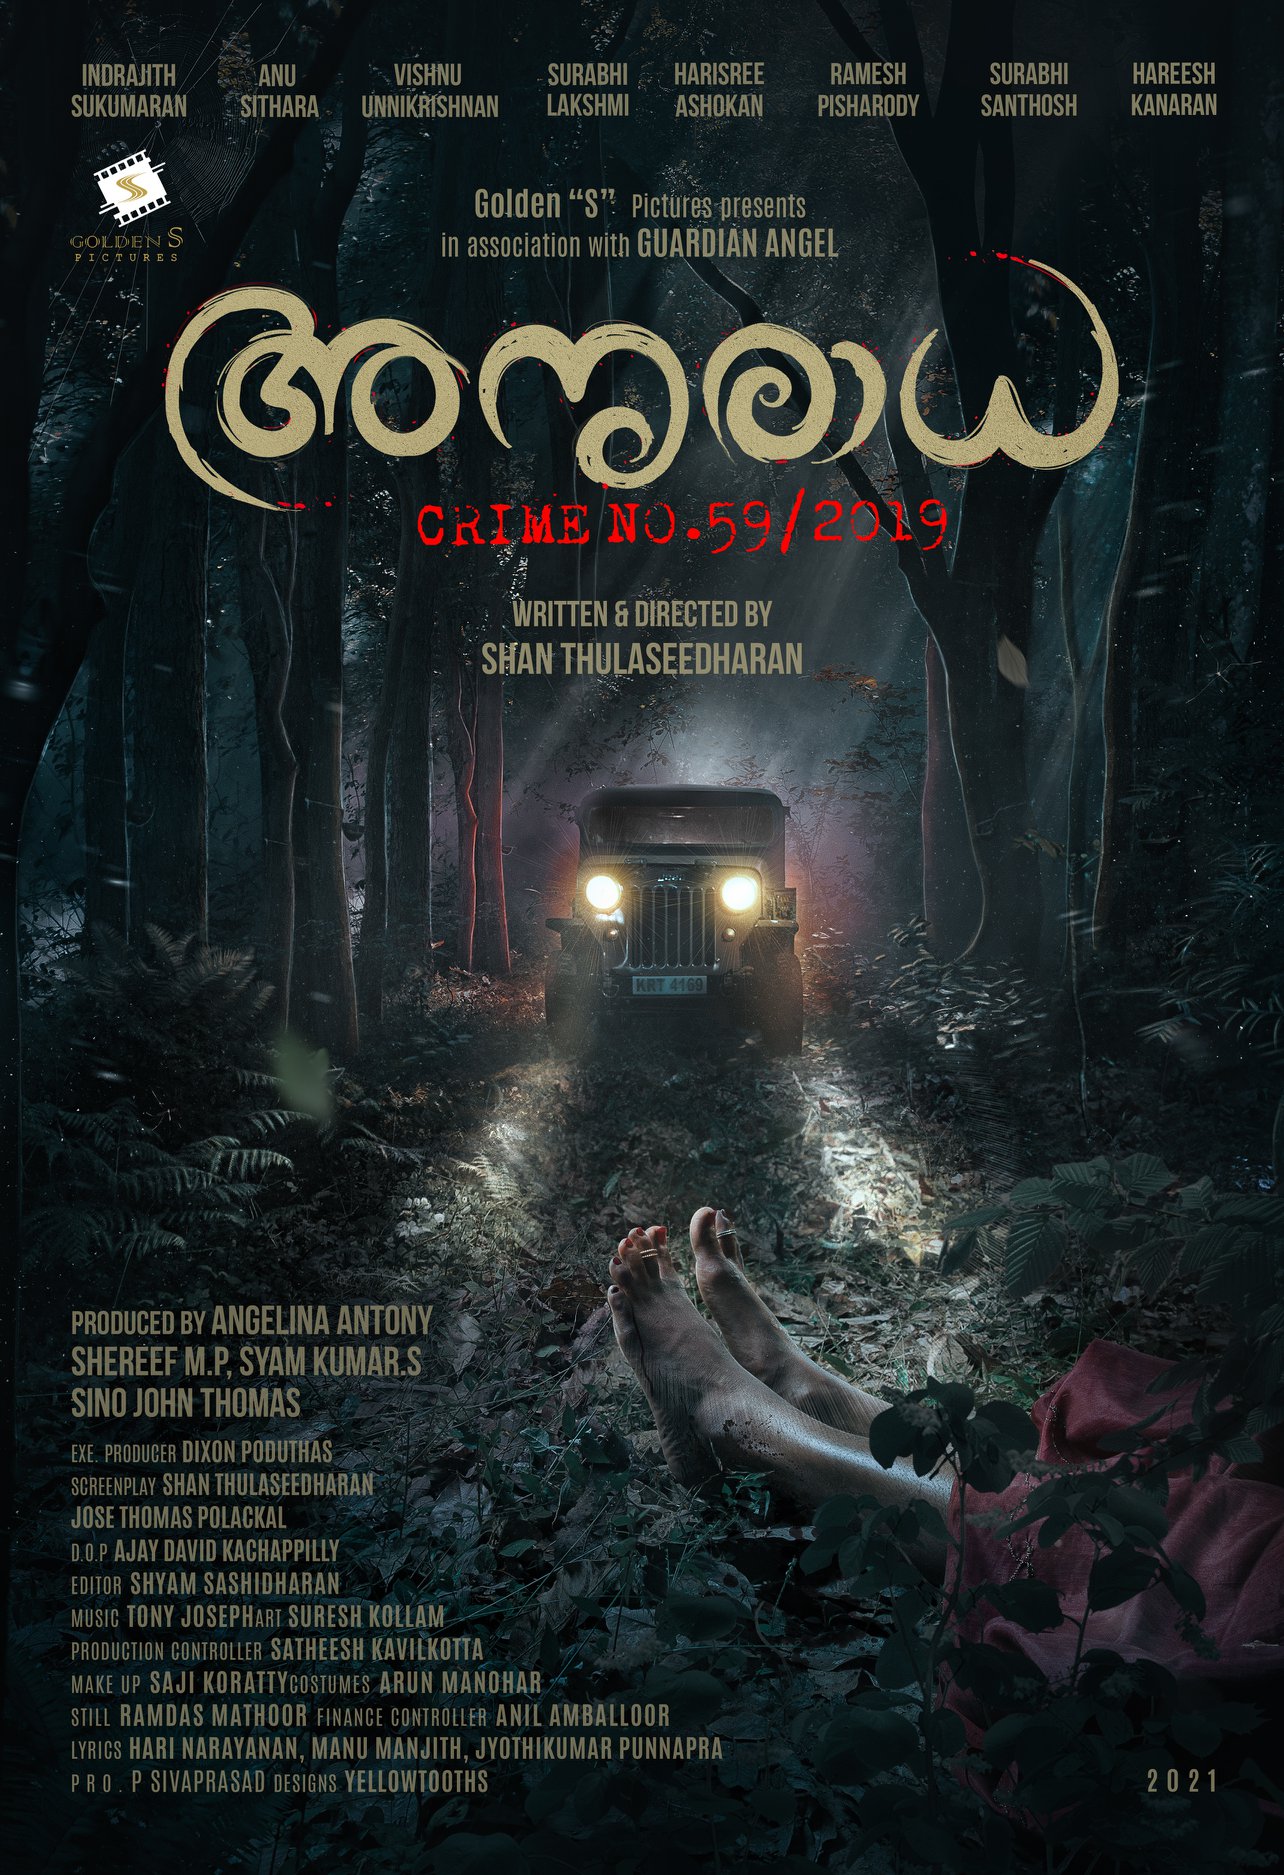 Anuradha Crime No.59/2019 Movie Review